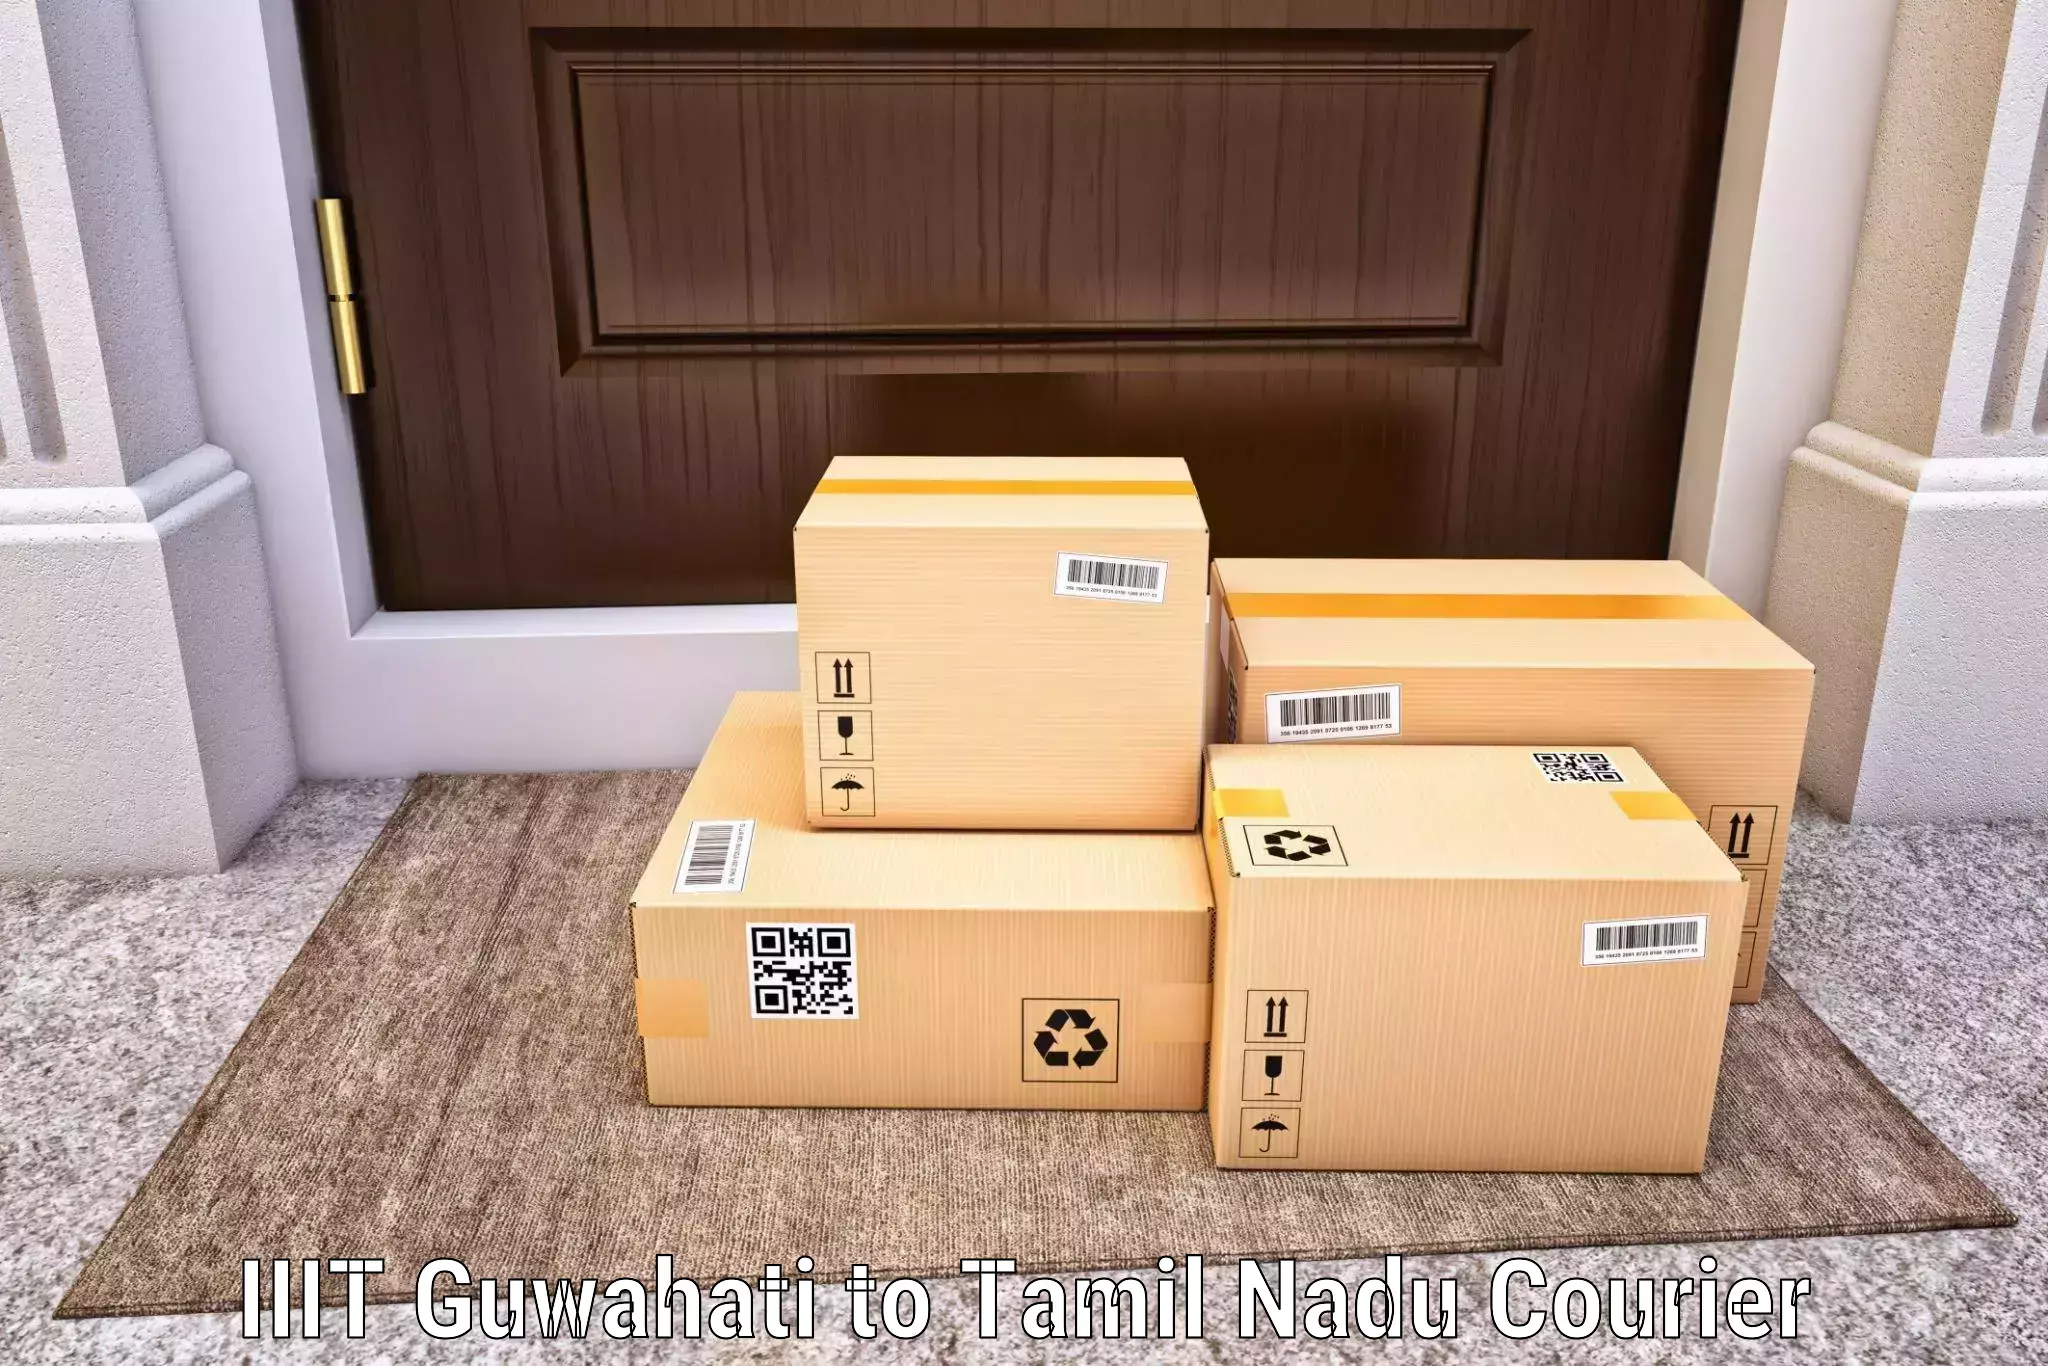 Advanced package delivery IIIT Guwahati to Kudankulam